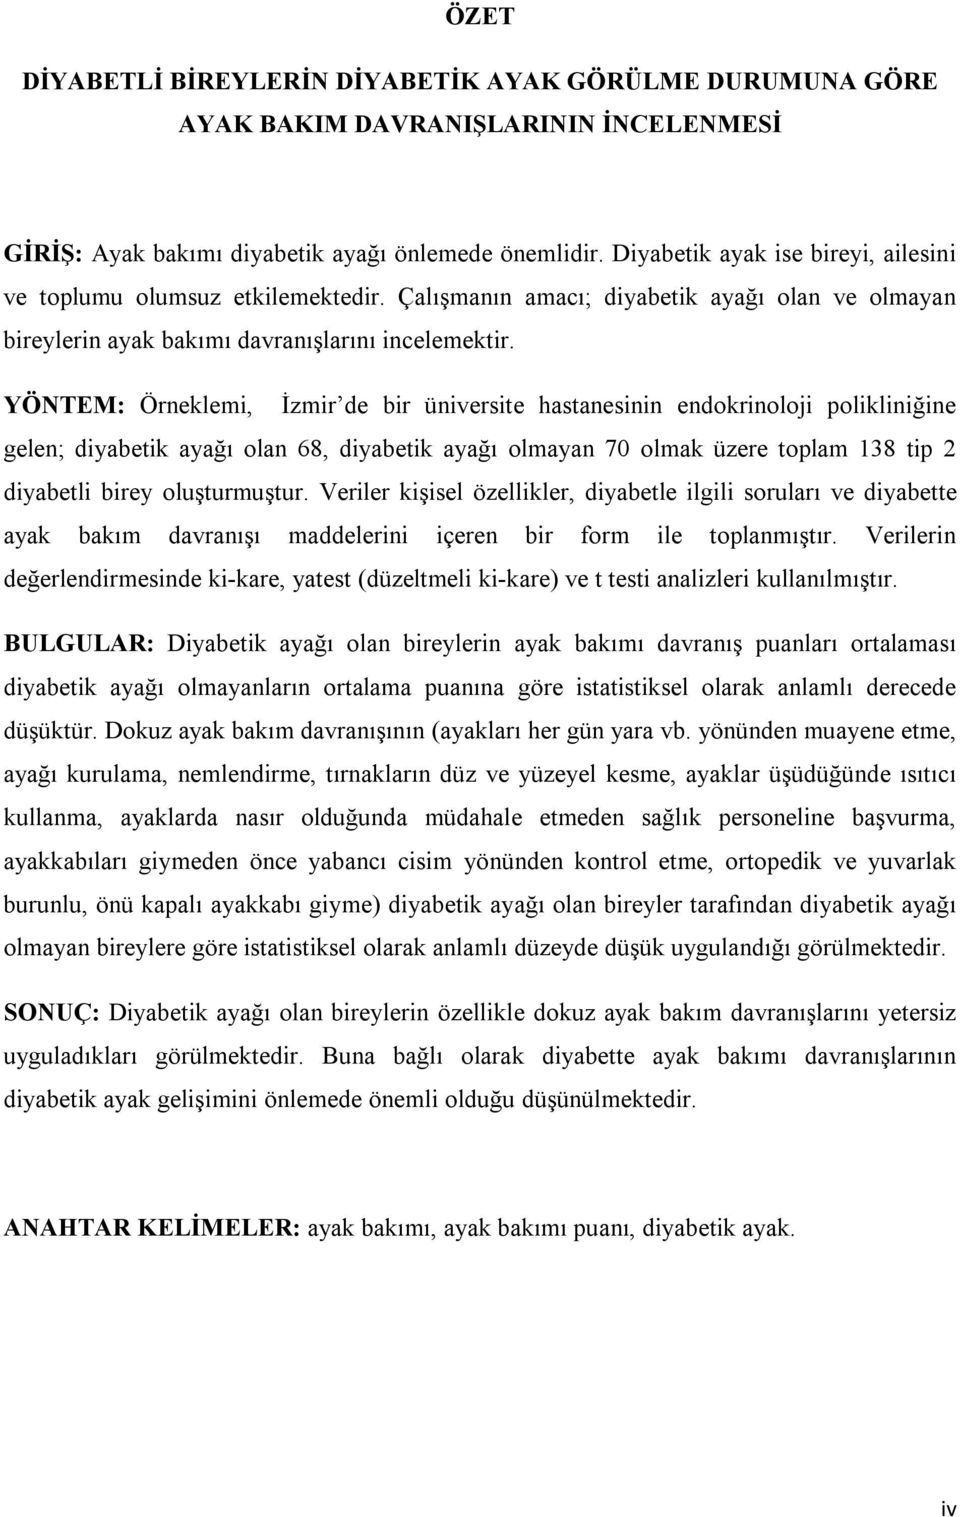 YÖNTEM: Örneklemi, İzmir de bir üniversite hastanesinin endokrinoloji polikliniğine gelen; diyabetik ayağı olan 68, diyabetik ayağı olmayan 70 olmak üzere toplam 138 tip 2 diyabetli birey